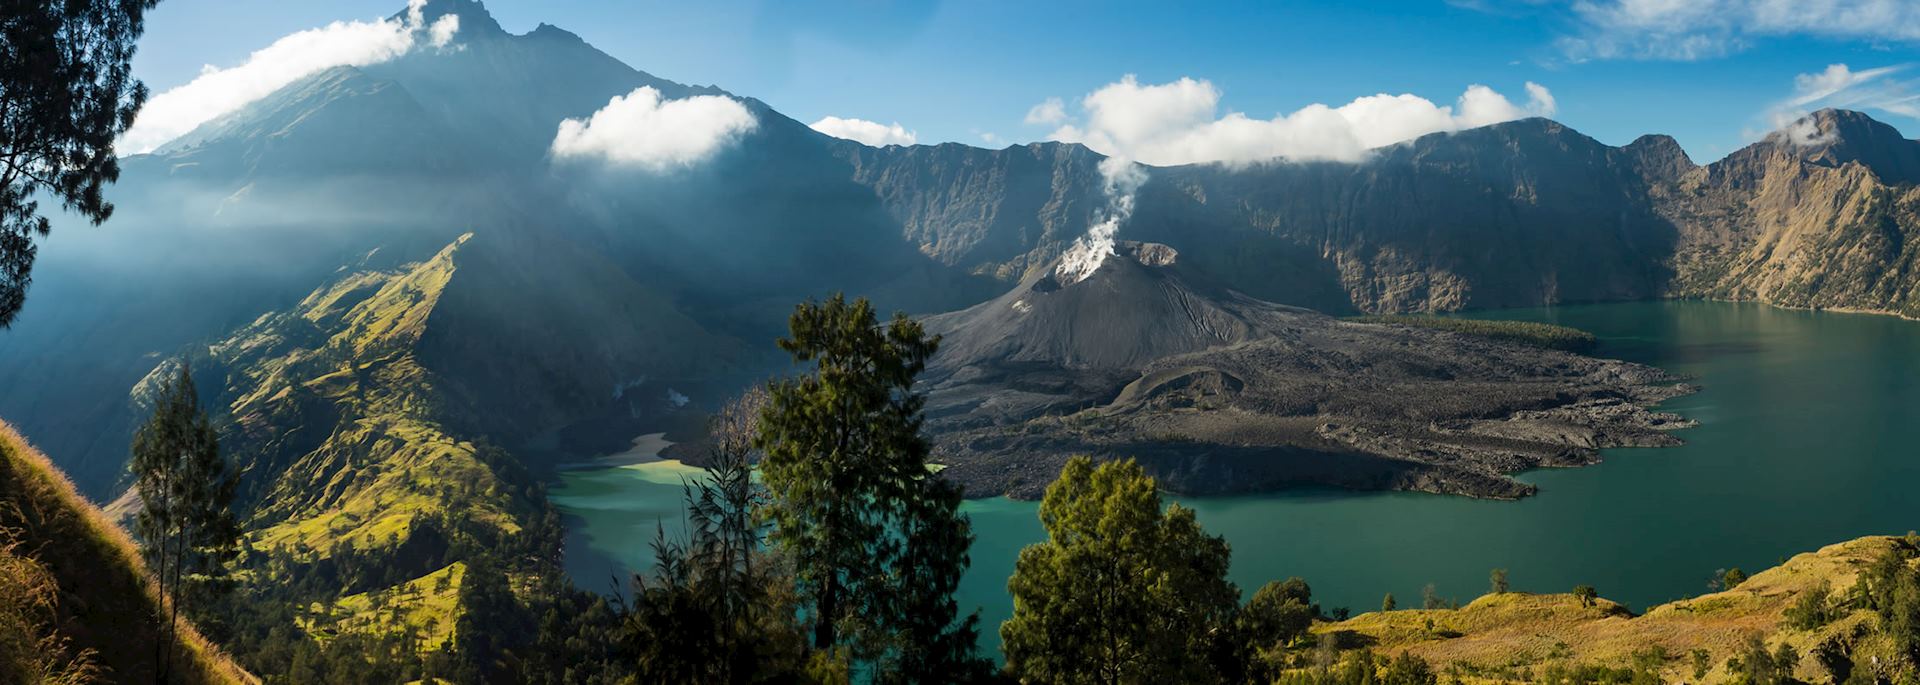 Rinjani Crater, Lombok